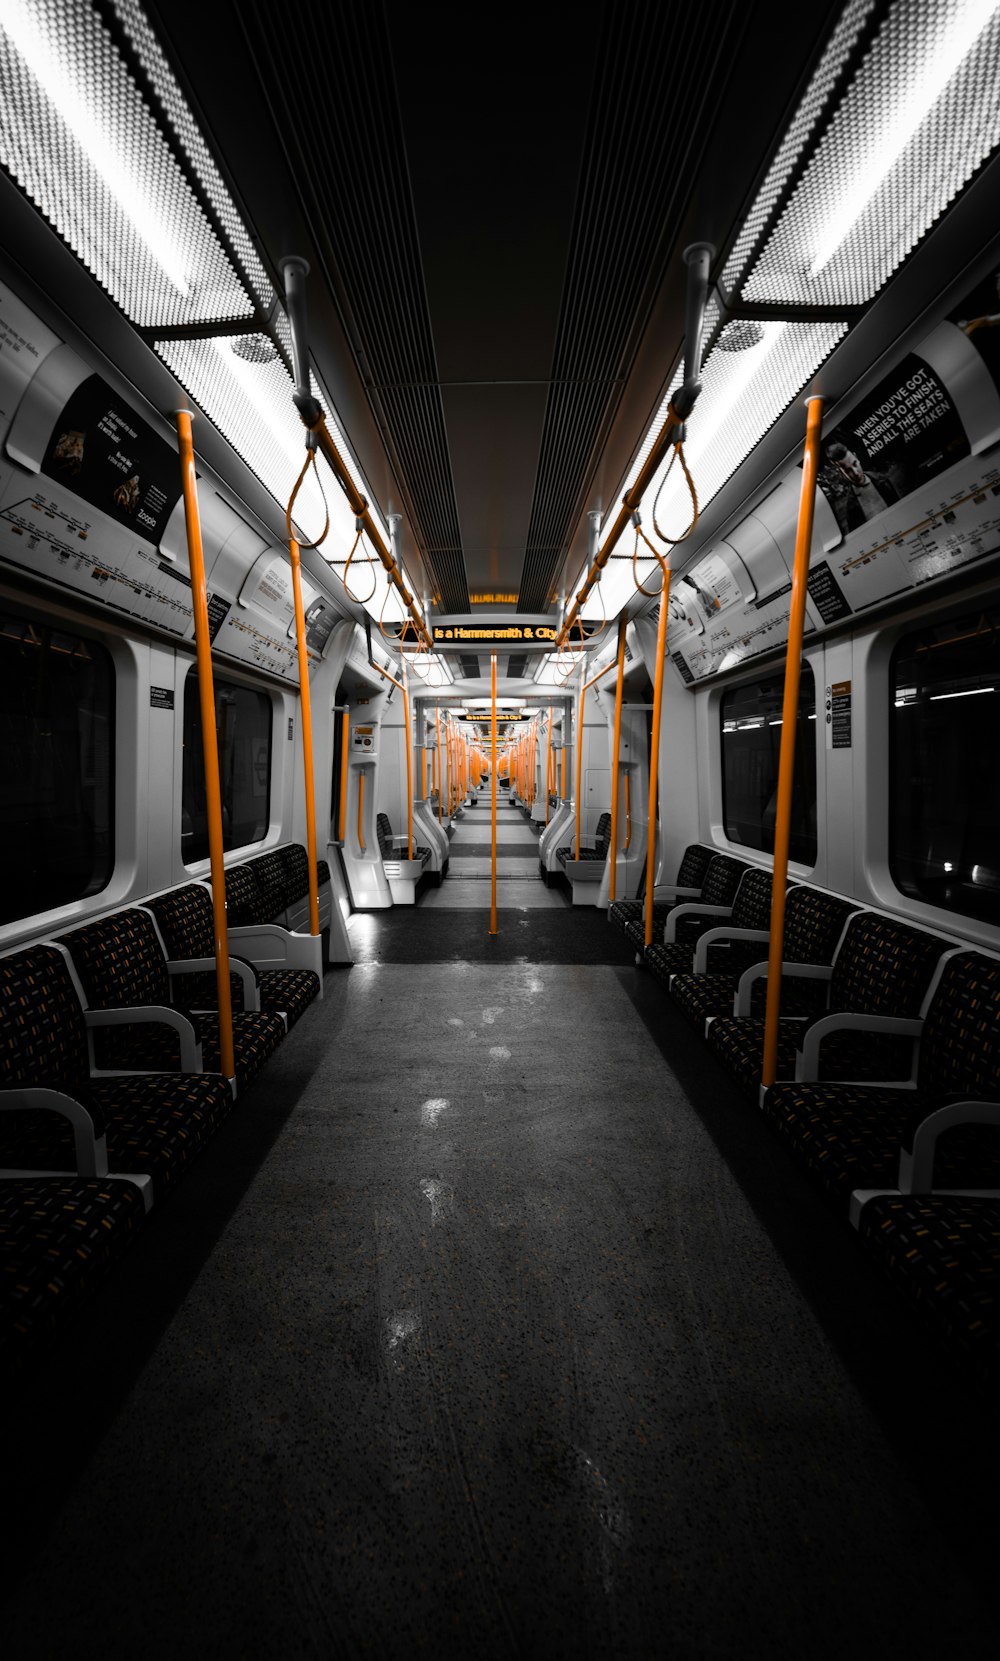 black and gray train interior